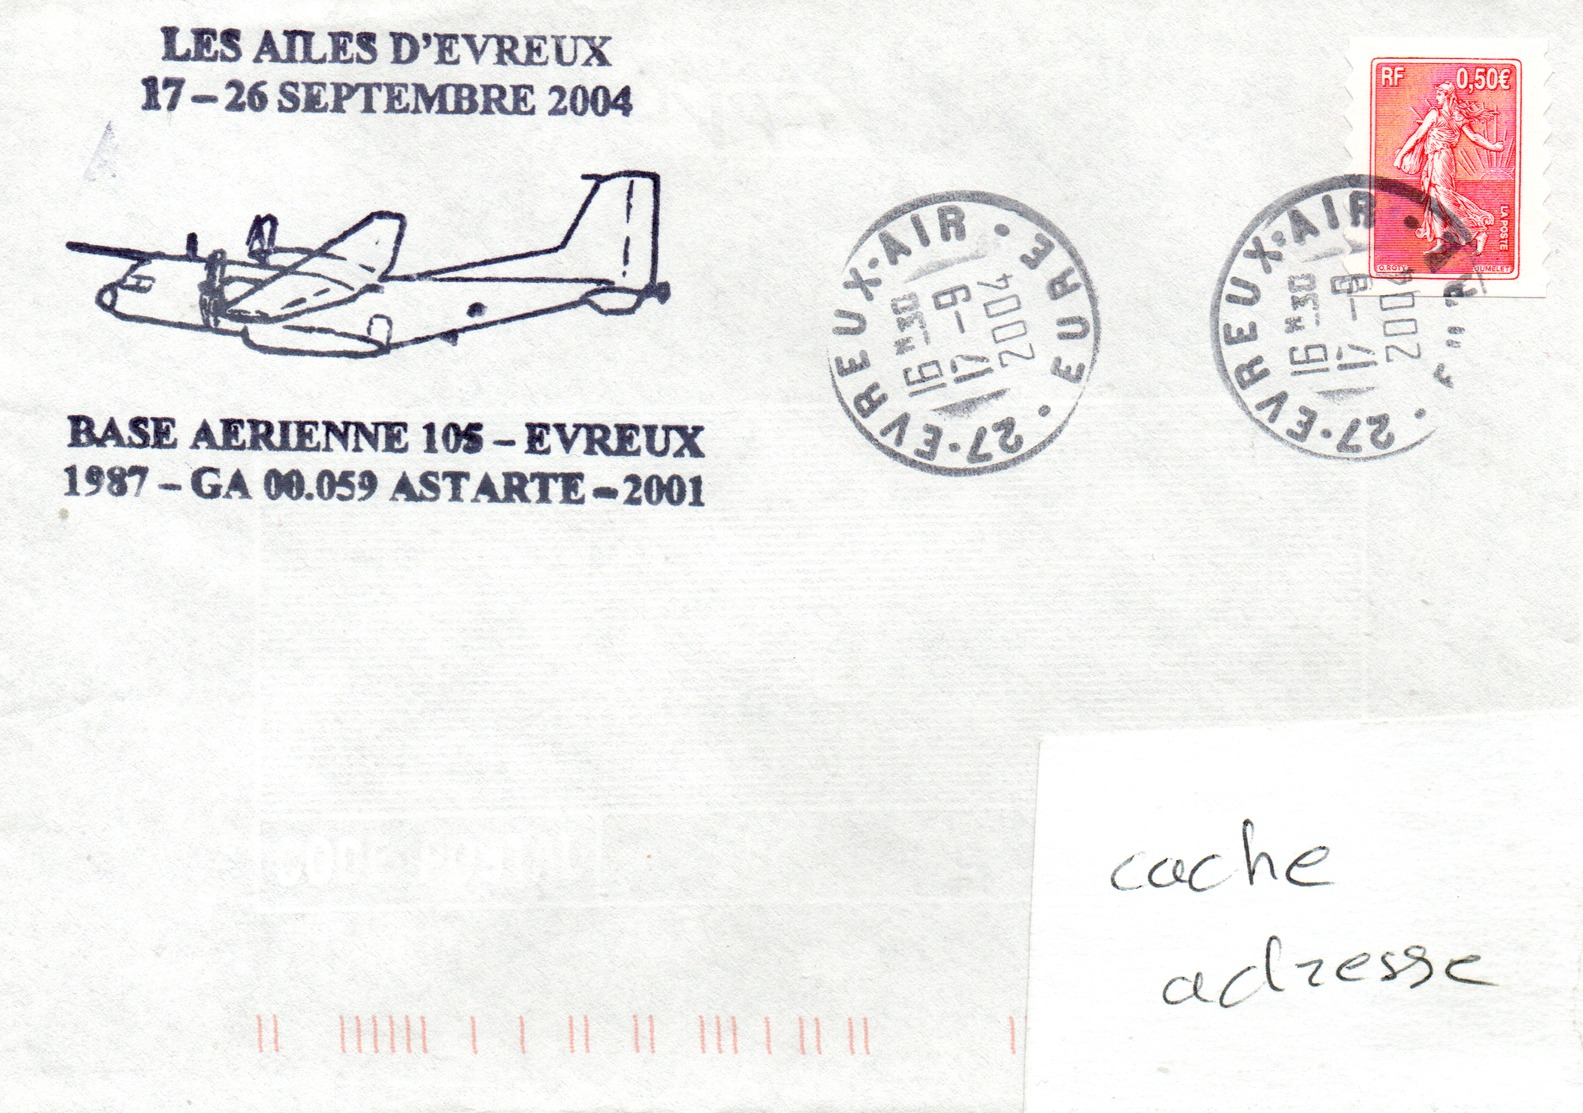 Les Ailes D'Evreux Base Aérienne (BA) 105 - Evreux GA 00.059 Astarte Obl. Evreux Air 17/09/04 - Militaria